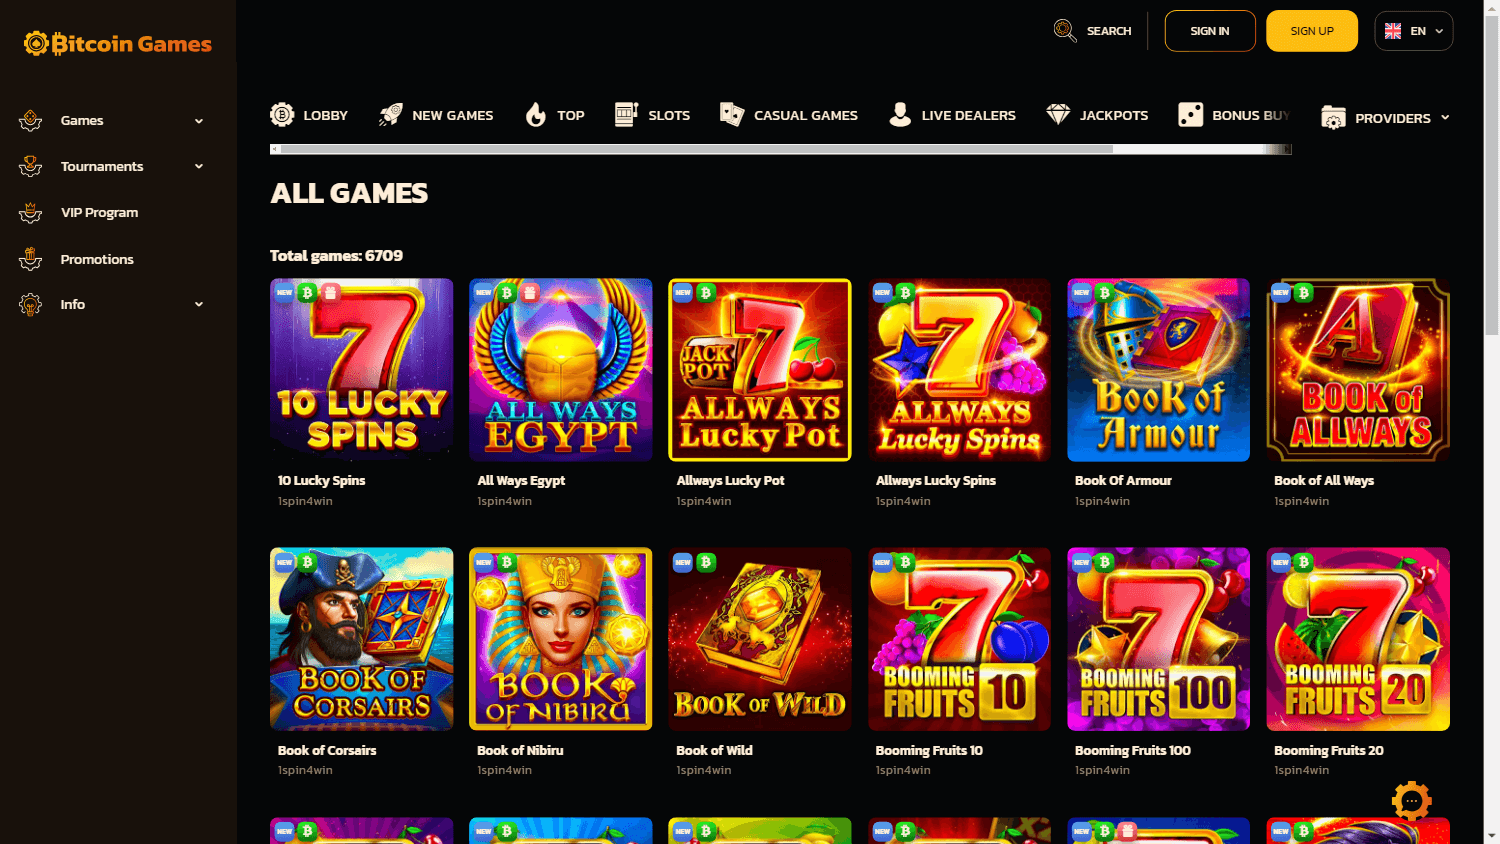 bitcoin_games_casino_game_gallery_desktop